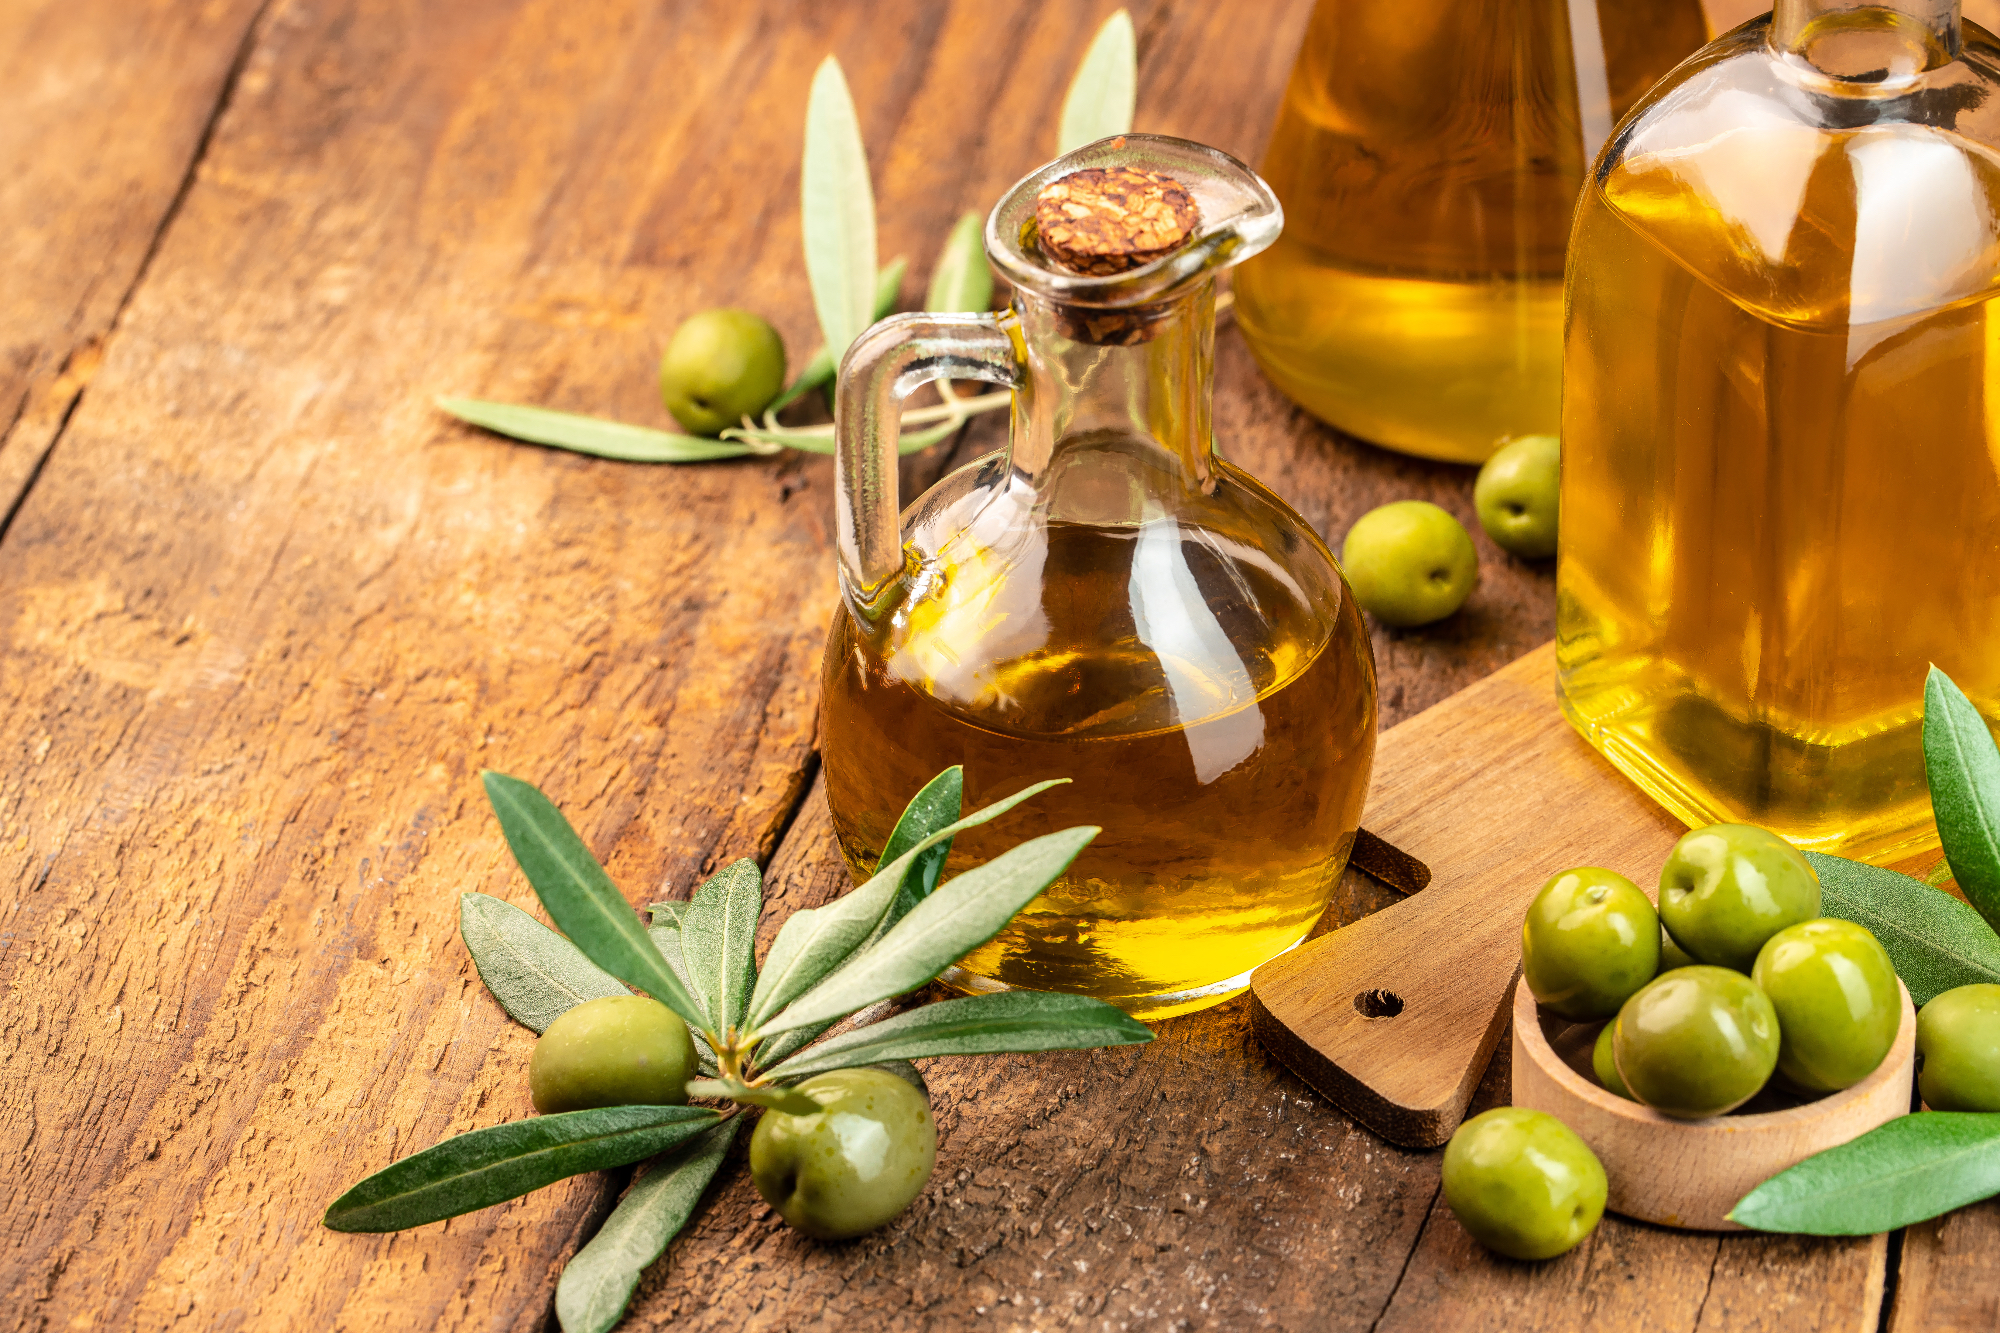 Ekstra deviško oljčno olje slovenske Istre je postalo olje naše izbire